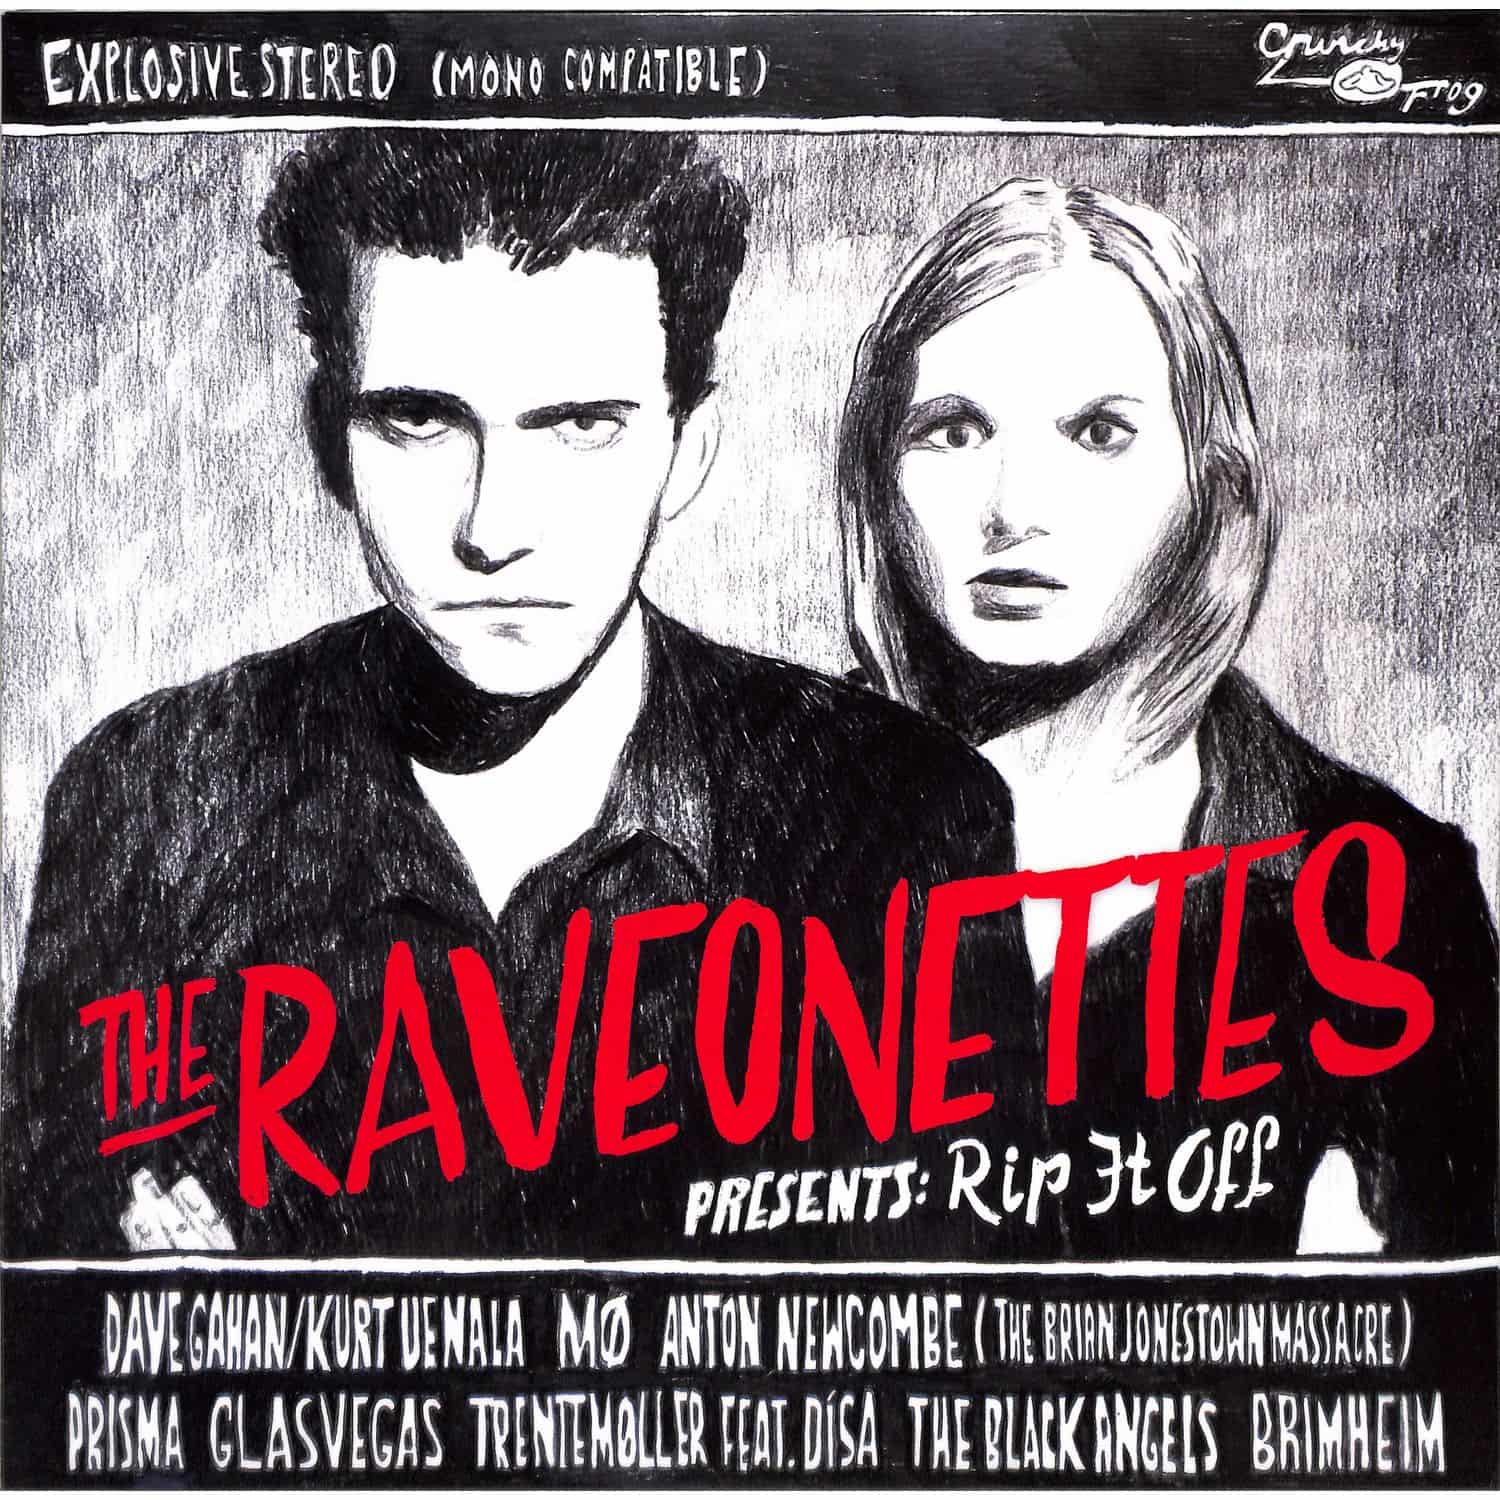 Raveonettes - RAVEONETTES PRESENT: RIP IT OFF 